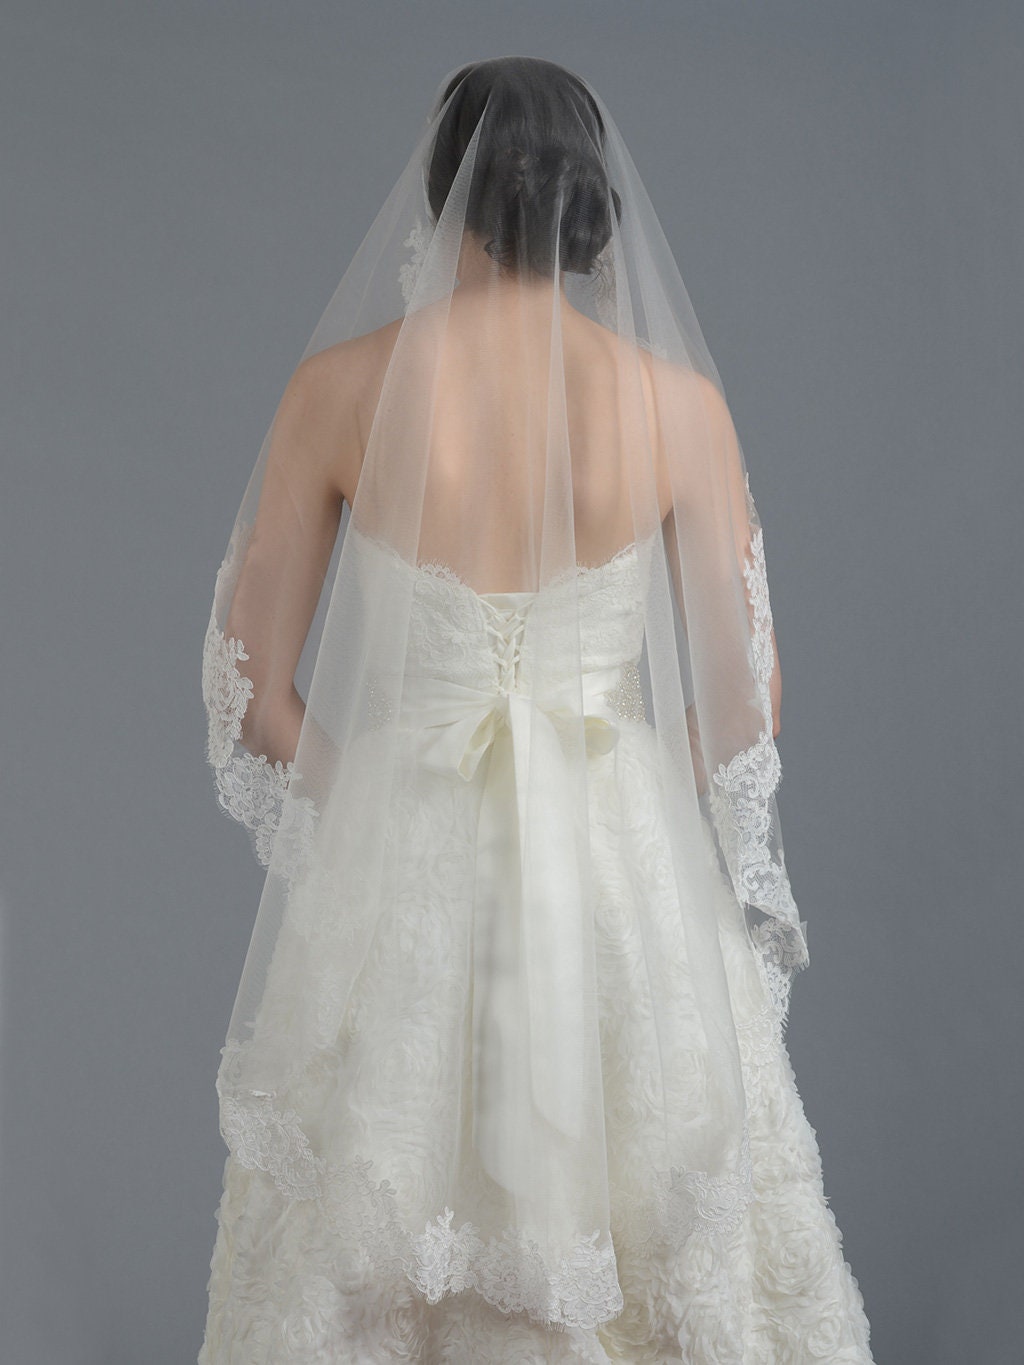 wedding veil, bridal veil, mantilla veil, fingertip length veil, alencon lace veil, wedding veil ivory, wedding veil elbow